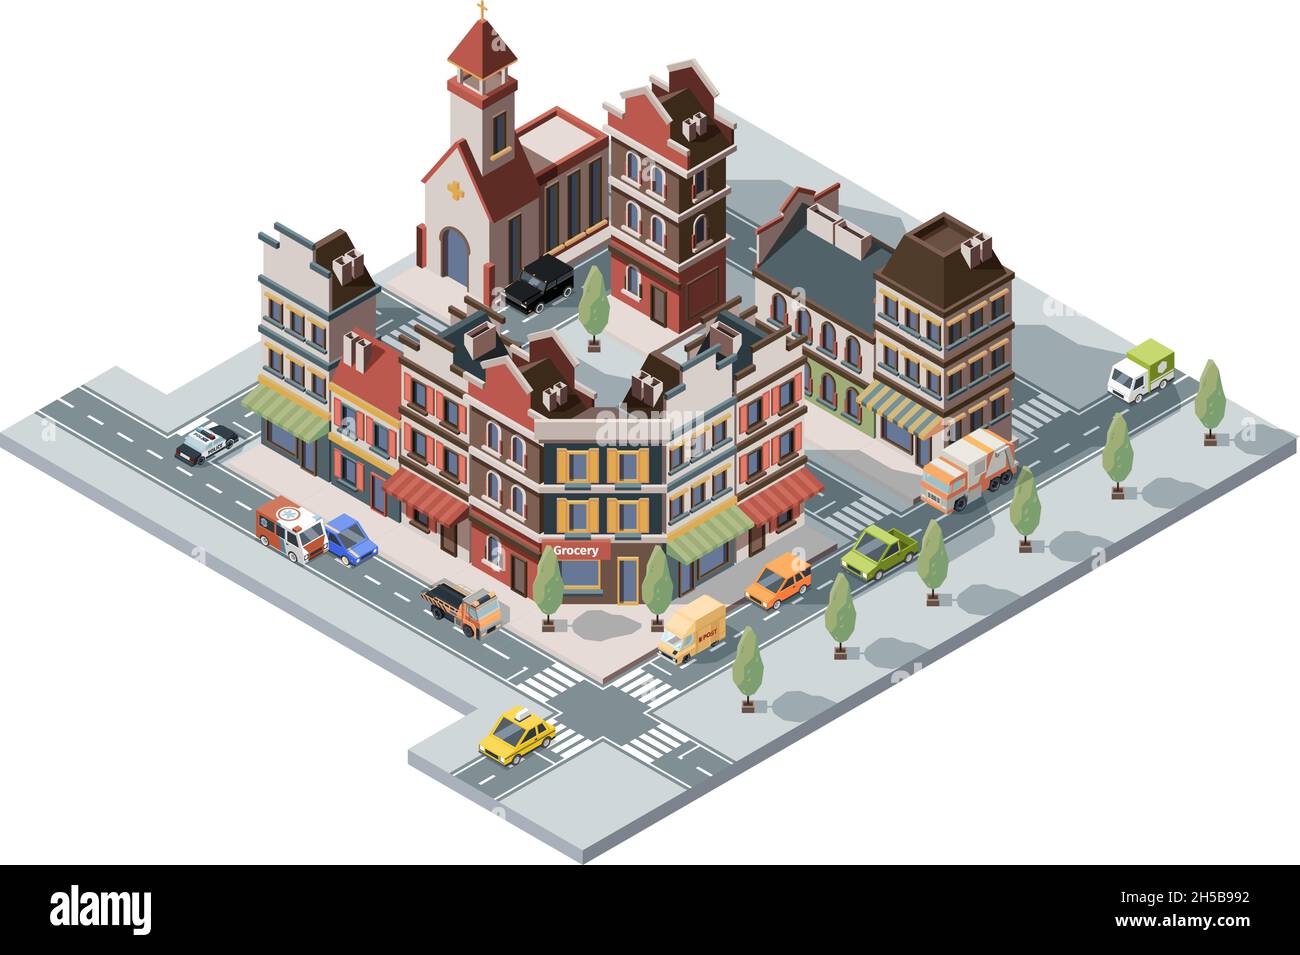 Altstadt isometrisch. Karte 3d städtische Infrastruktur Retro historische Häuser und Konstruktionen Vektor Gebäude gesetzt Stock Vektor